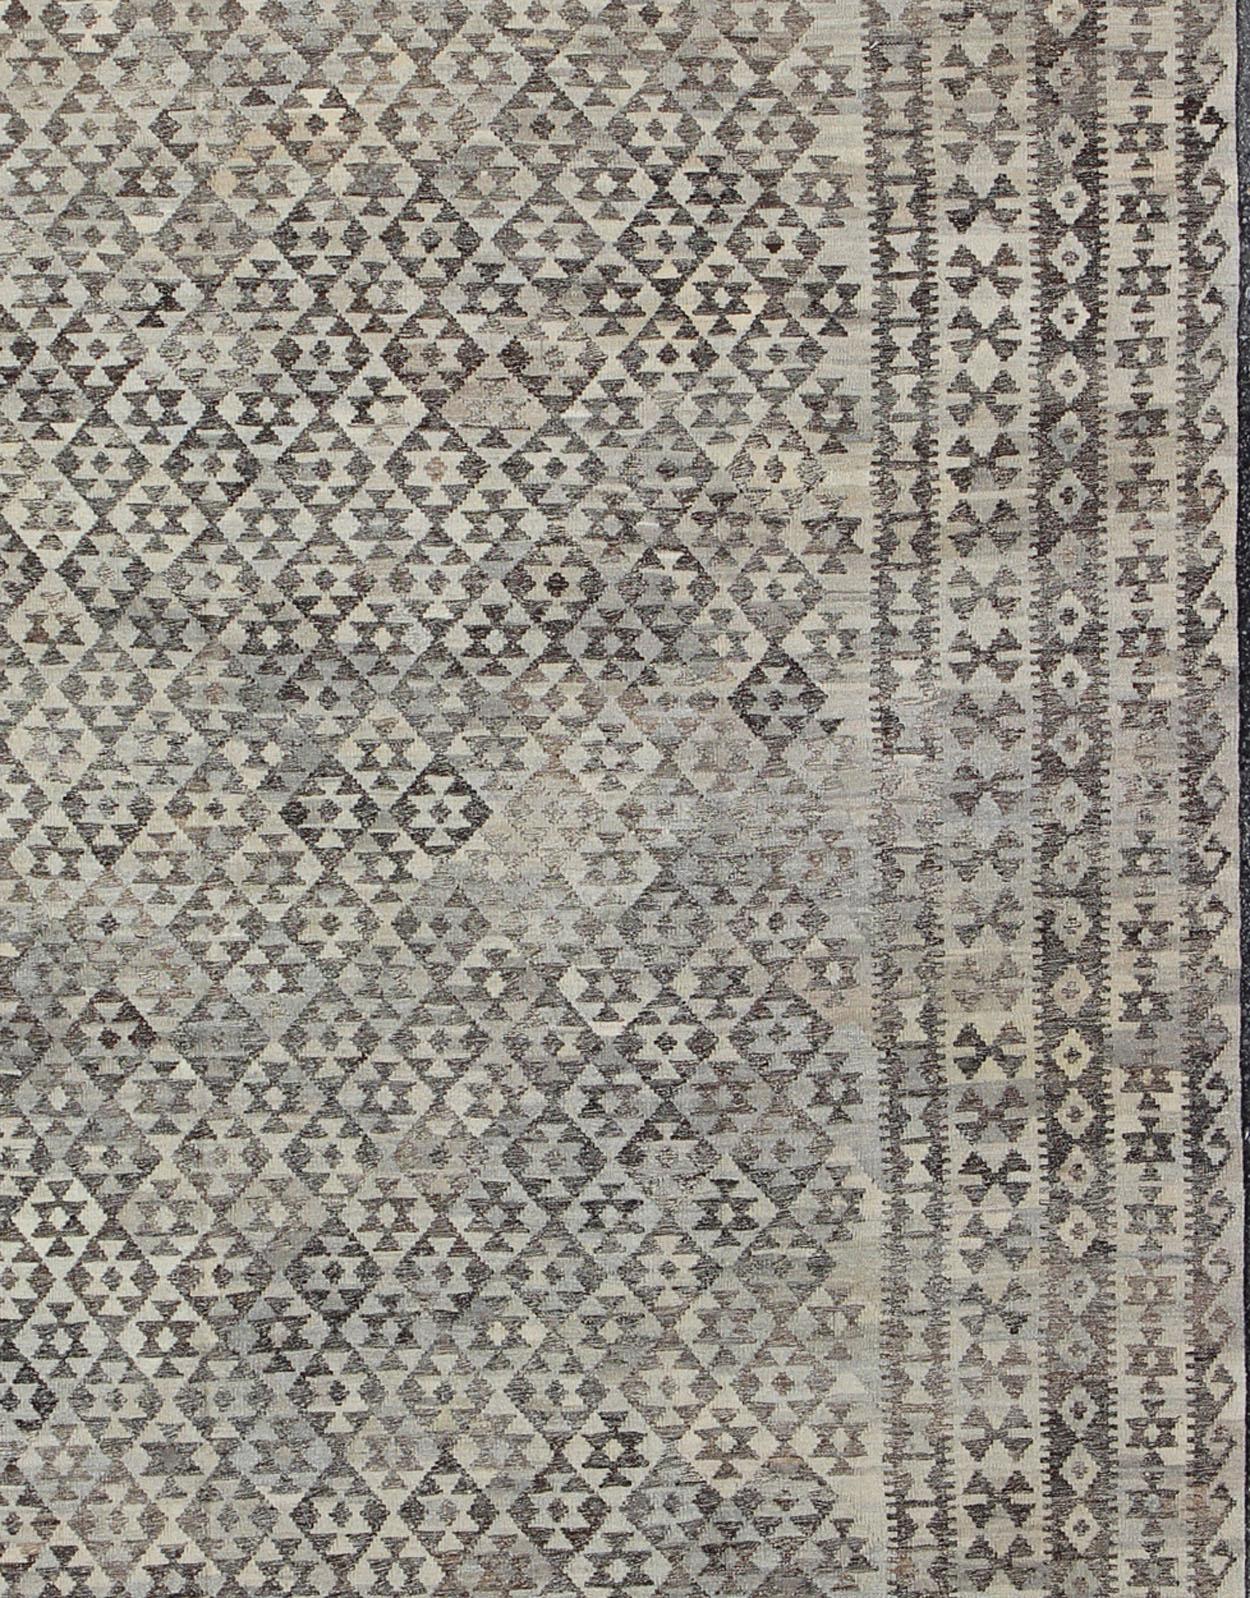 Ce tapis kilim afghan tissé à la main présente un magnifique motif géométrique en forme de diamant 

Mesures : 10'0 x 13'0 

Afghan Modern Kilim, Keivan Woven Arts, Rug ABT-8132869, en Charcoal, silver, Brown, Silver Blue et Gray , origine/